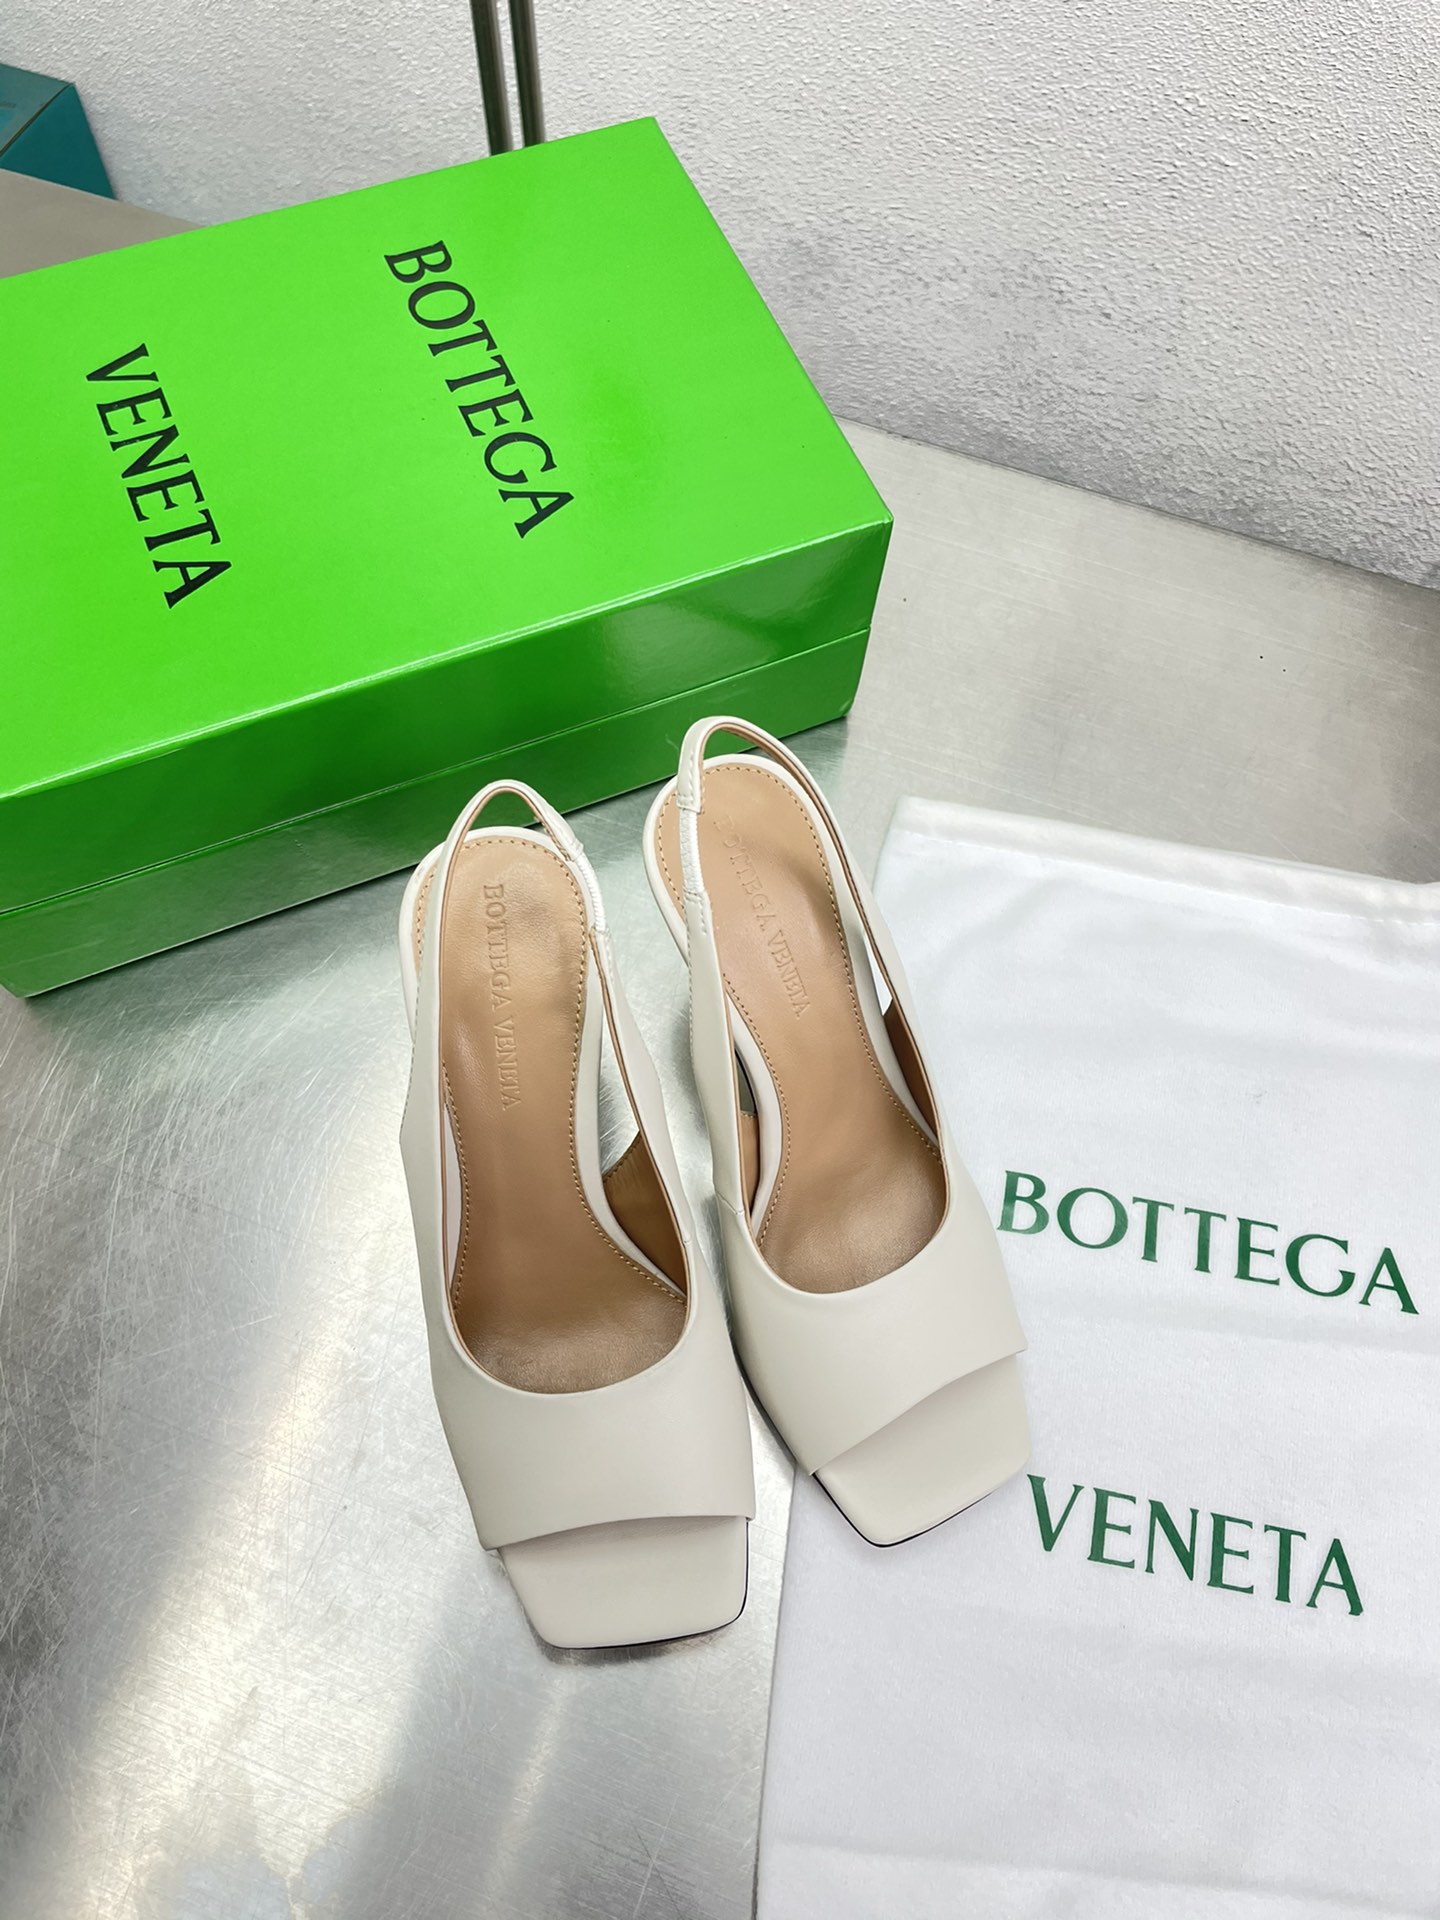 Bottega Veneta Chaussures Sandales Pantoufles Couleur beige Blanc Genuine Leather Peau de mouton